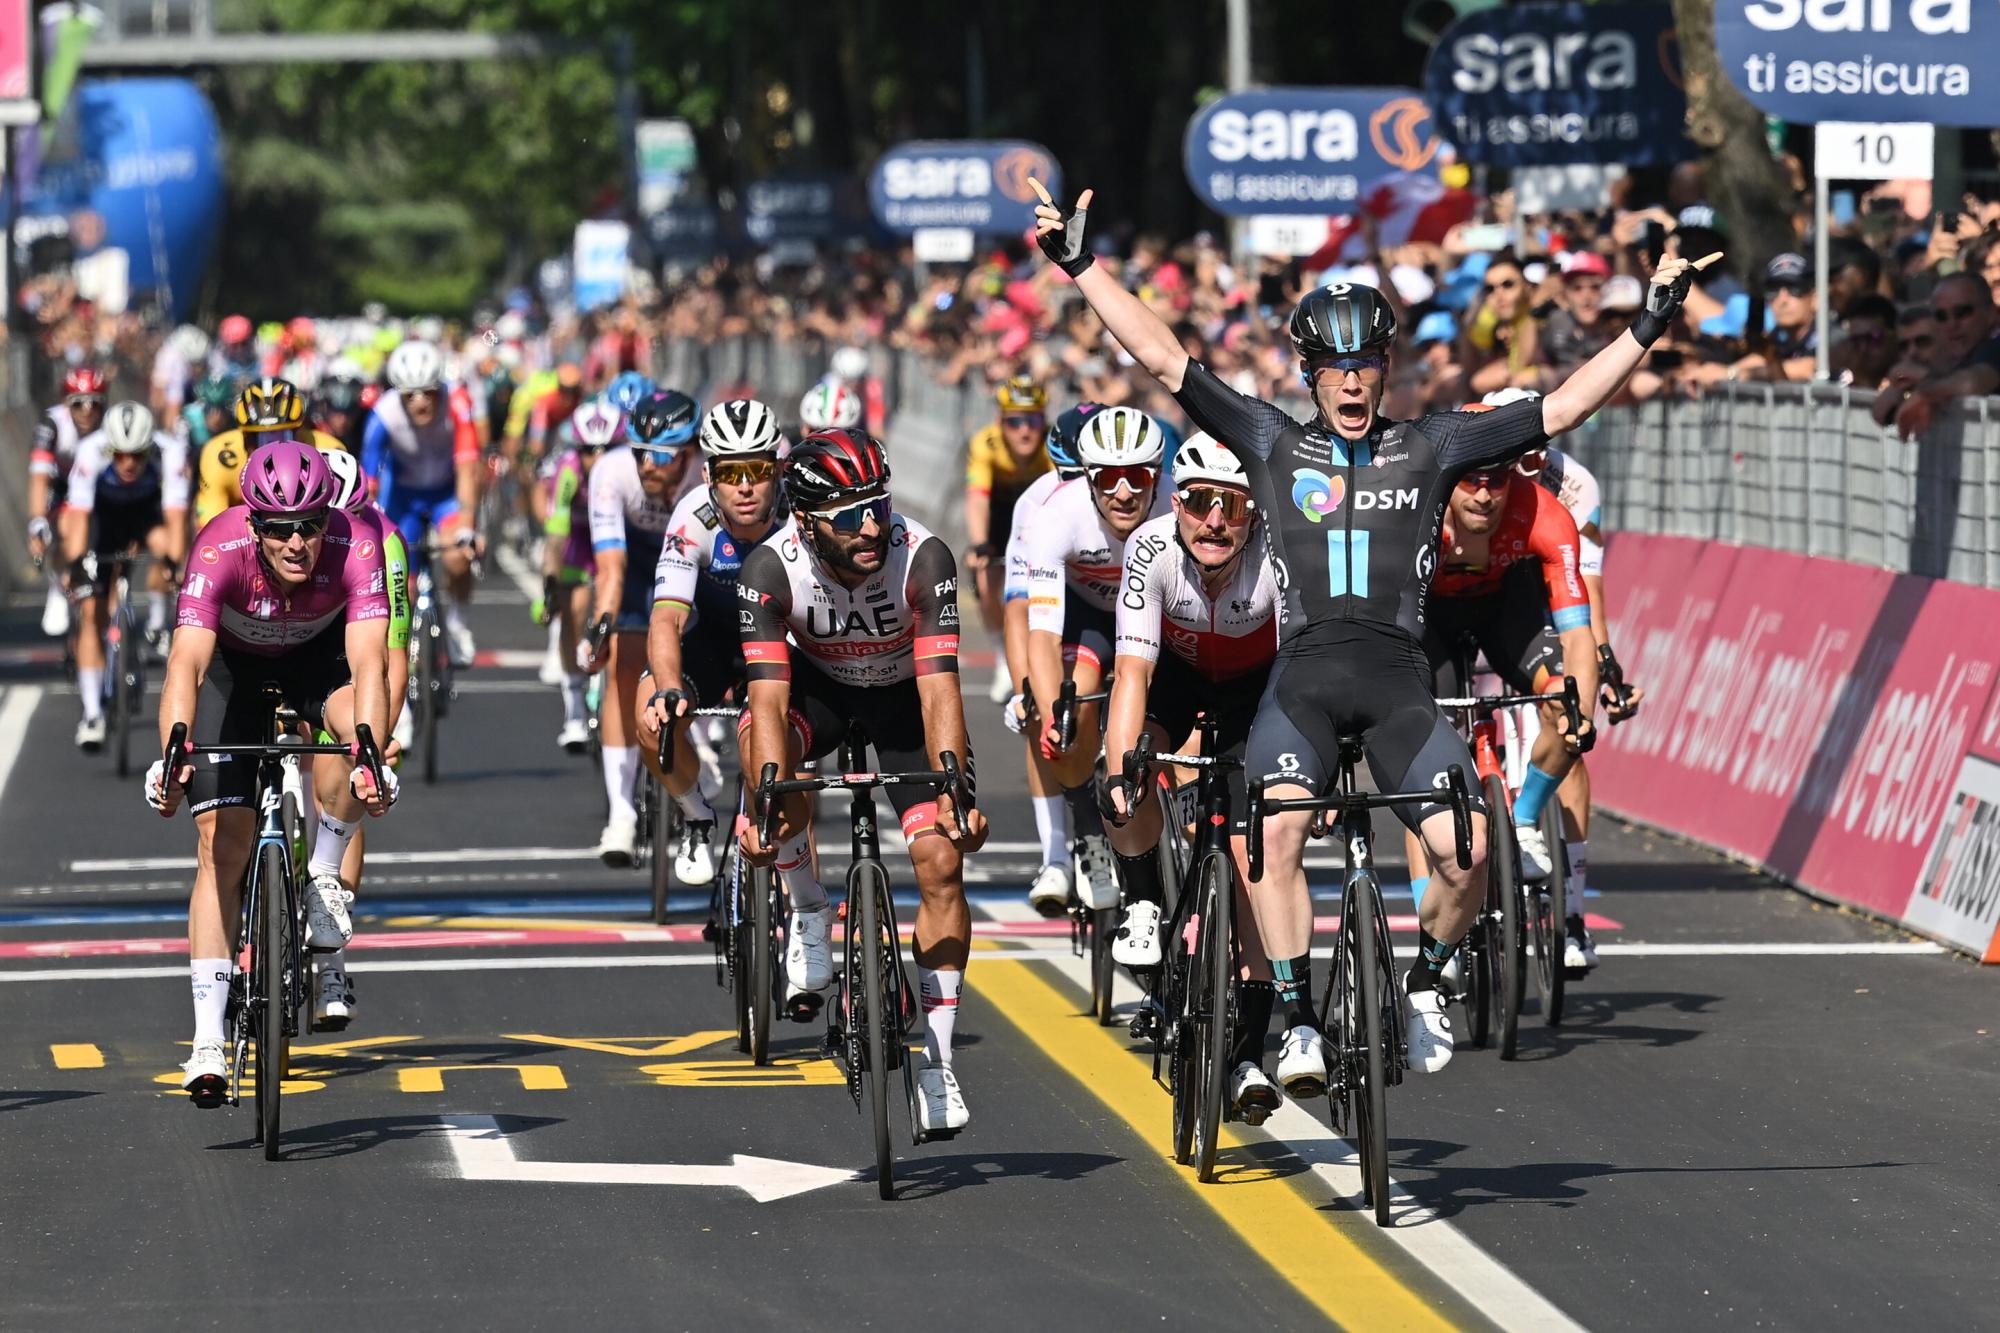 $!Alberto Dainese impone su magistral sprint en el Giro de Italia